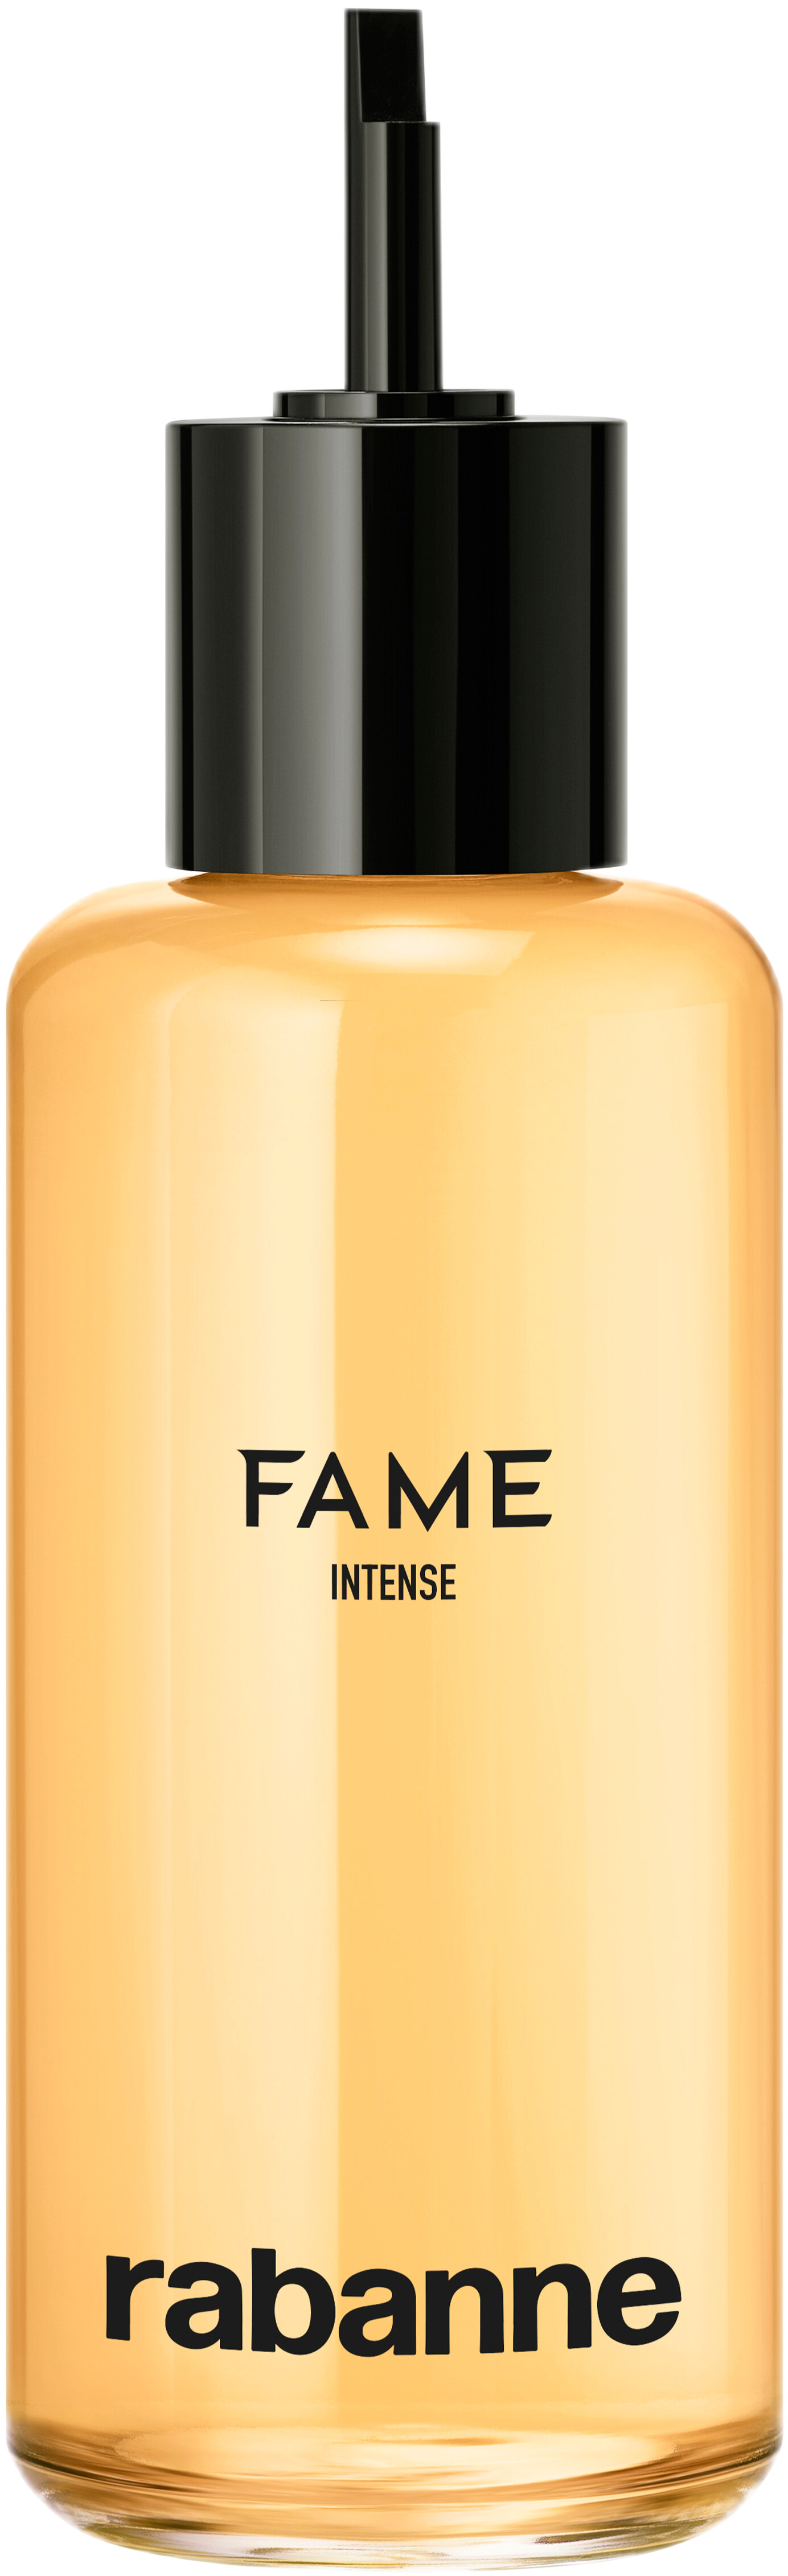 Rabanne Fame Intense Eau de Parfum Spray Refill 200ml